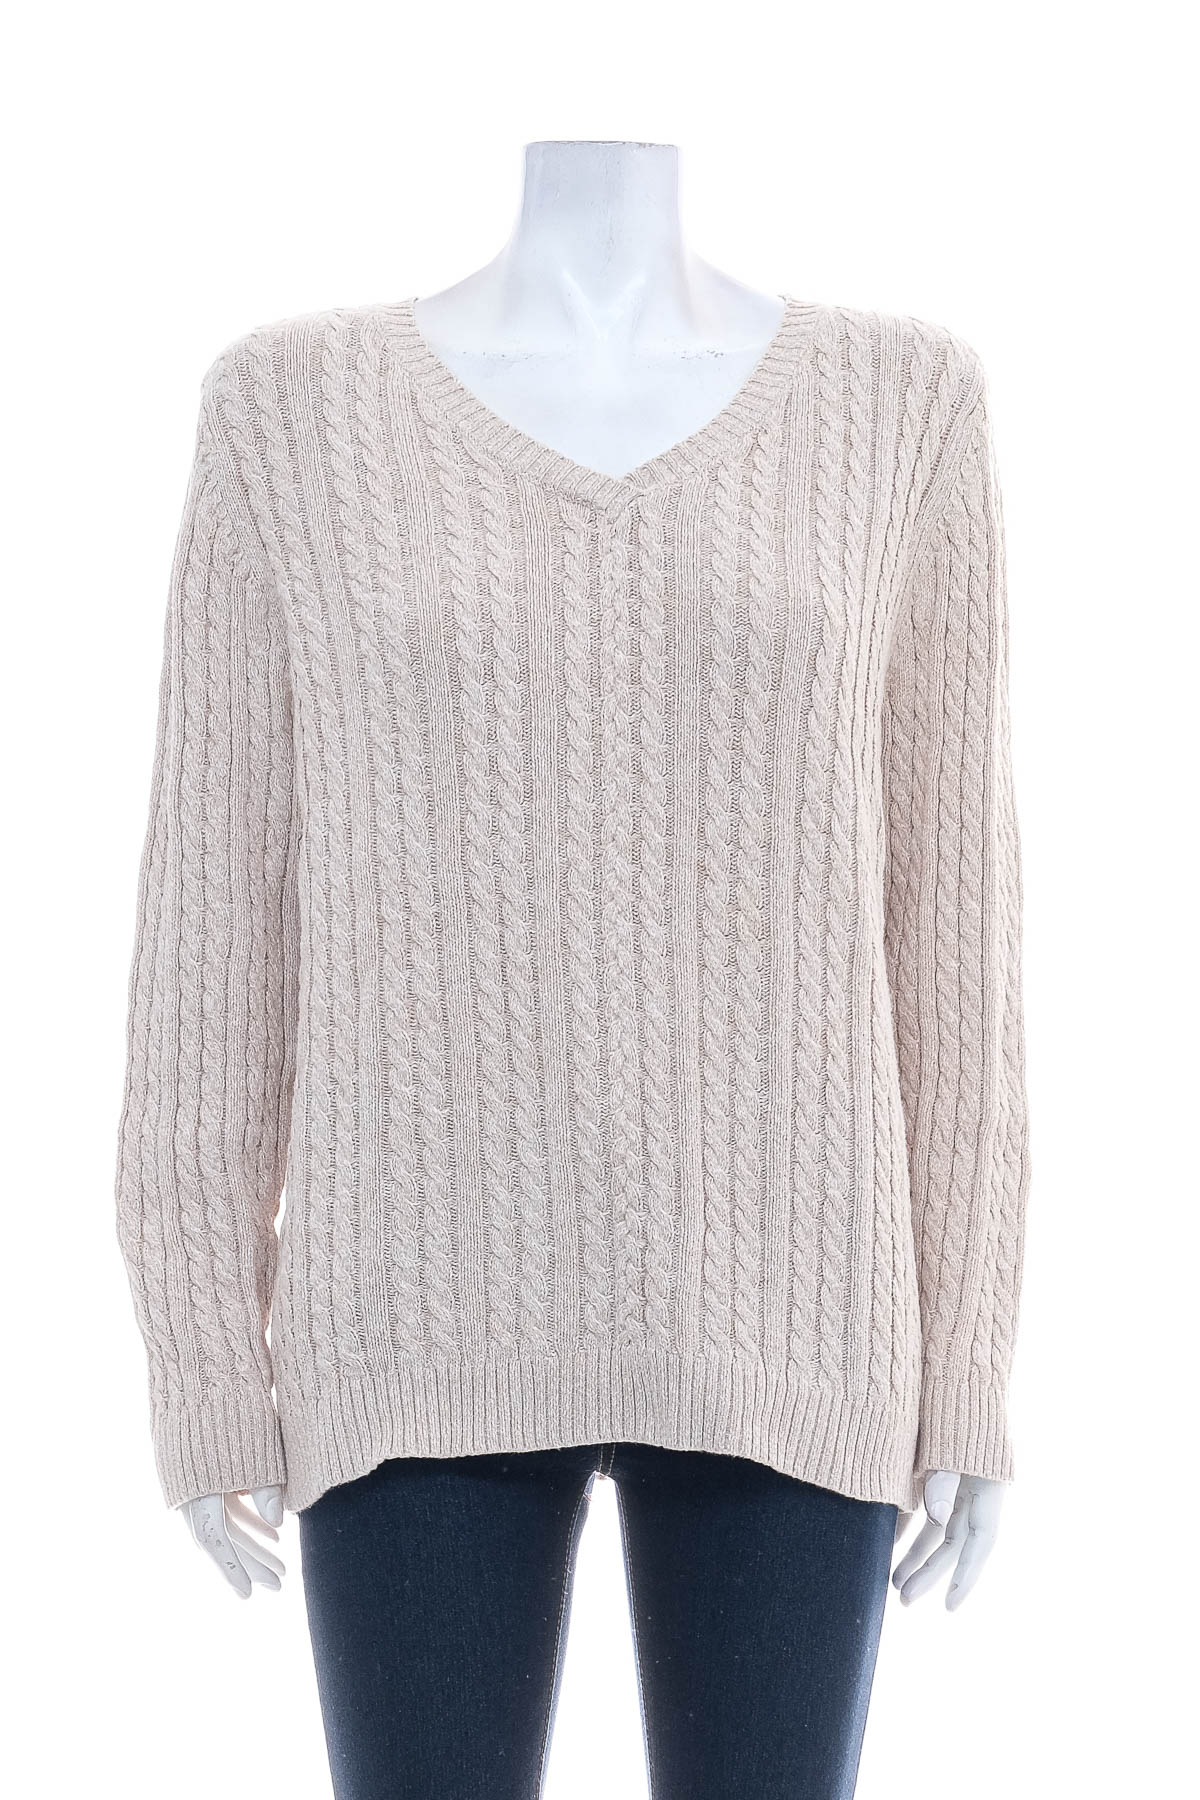 Women's sweater - Croft & Barrow - 0